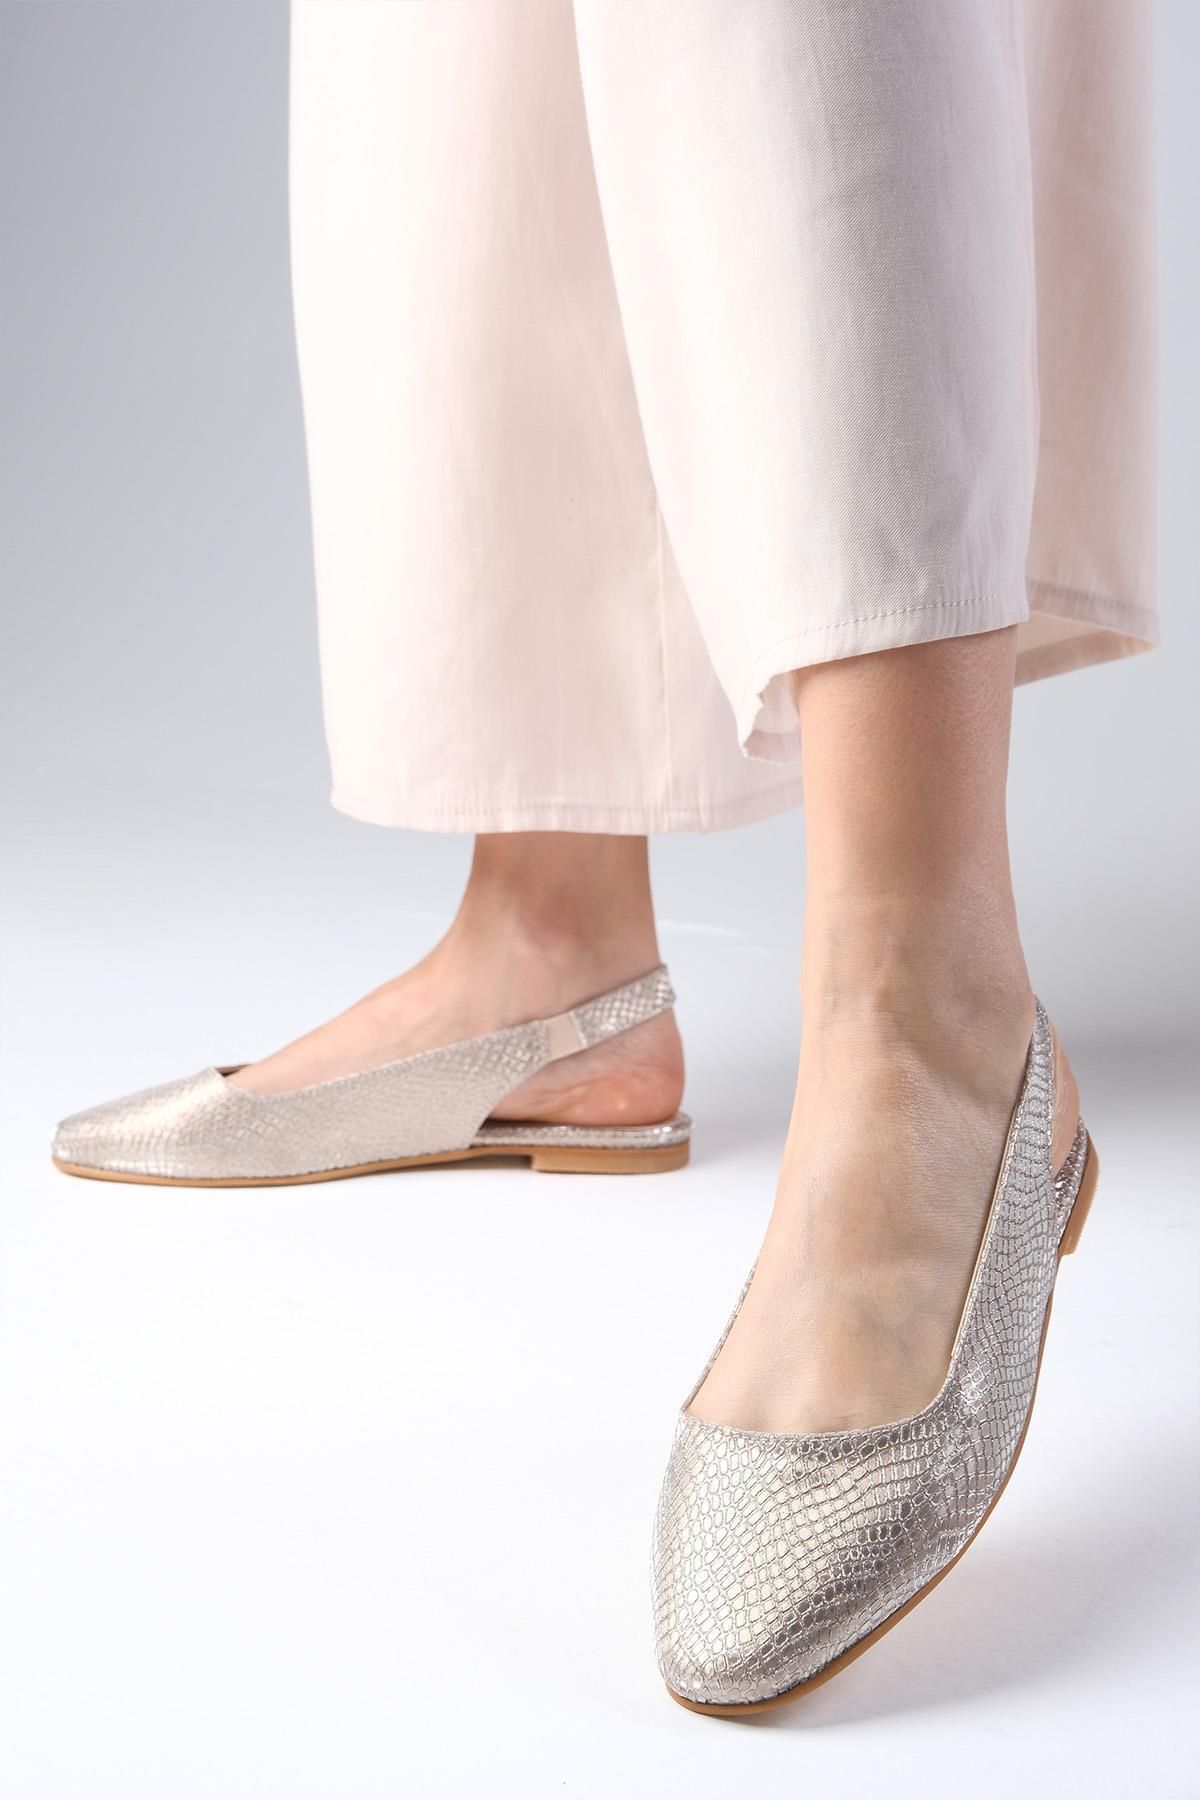 Mio Gusto Mio Gust Ally Altın Renk Yılan Derisi Desenli Küt Burunlu Arkası Açık Kadın Babet Ayakkabı